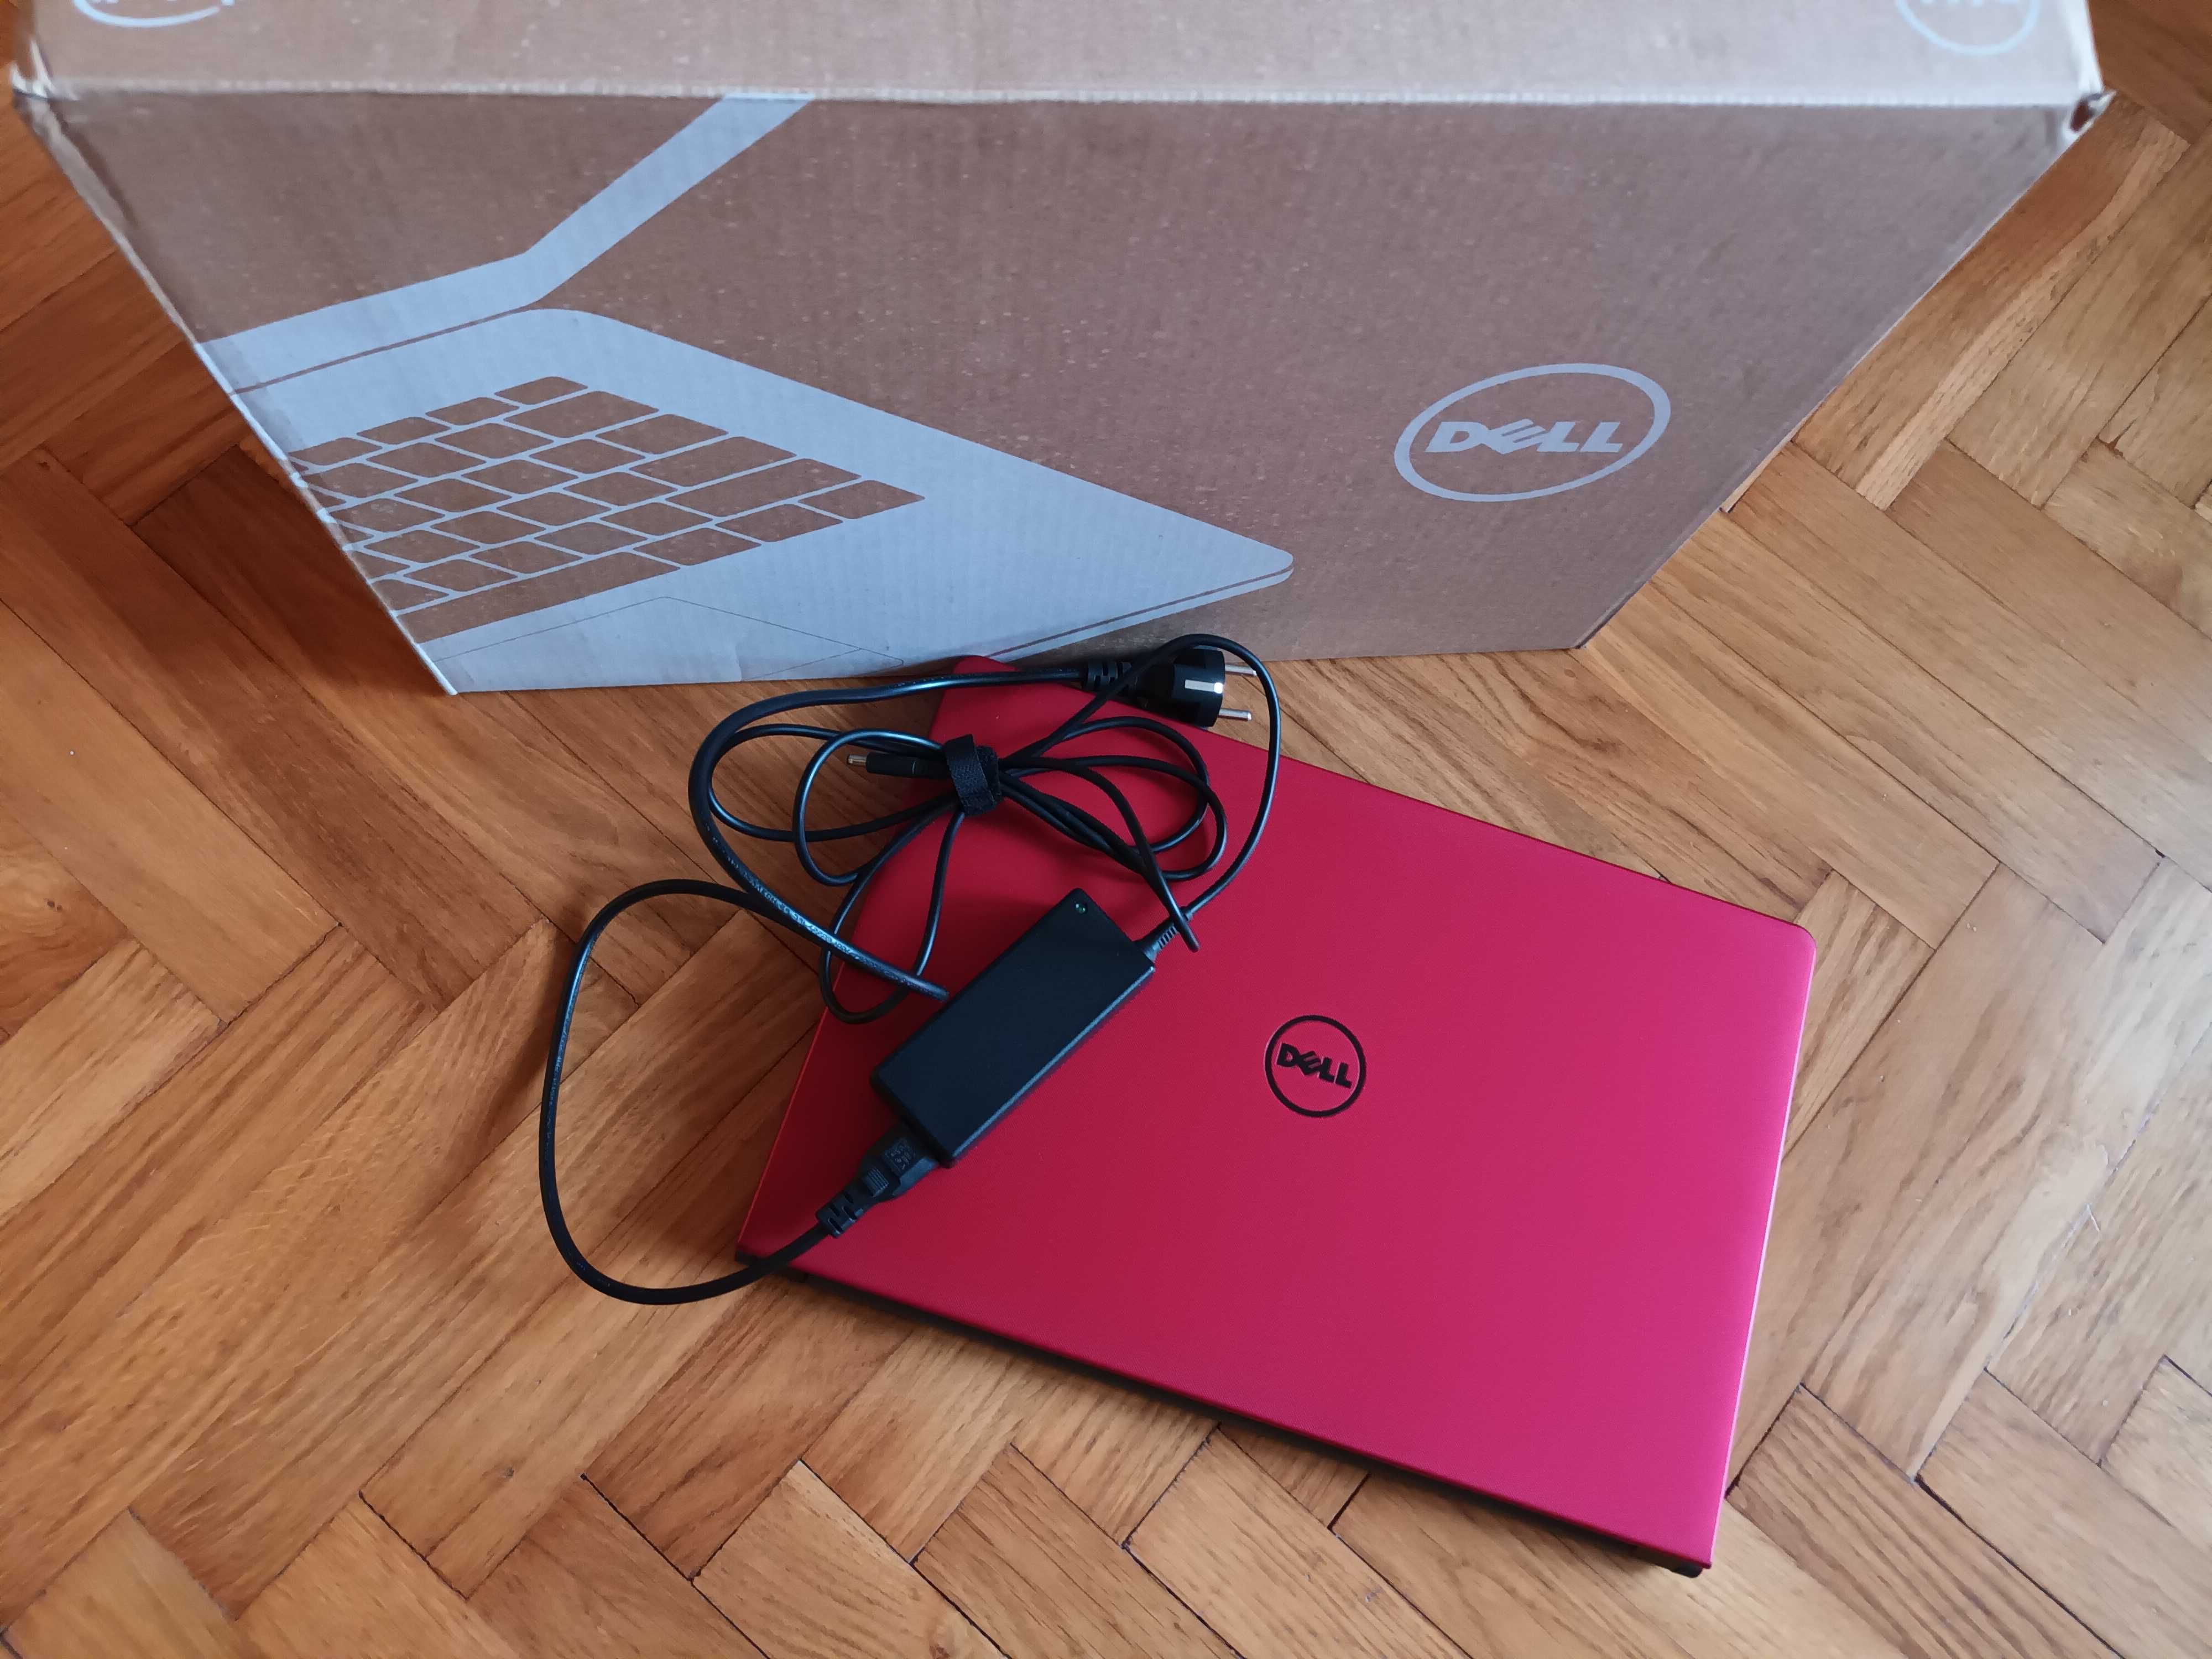 Komputer Laptop Dell Inspiron 15 5558 - 4402 czerwony z dyskiem SSD